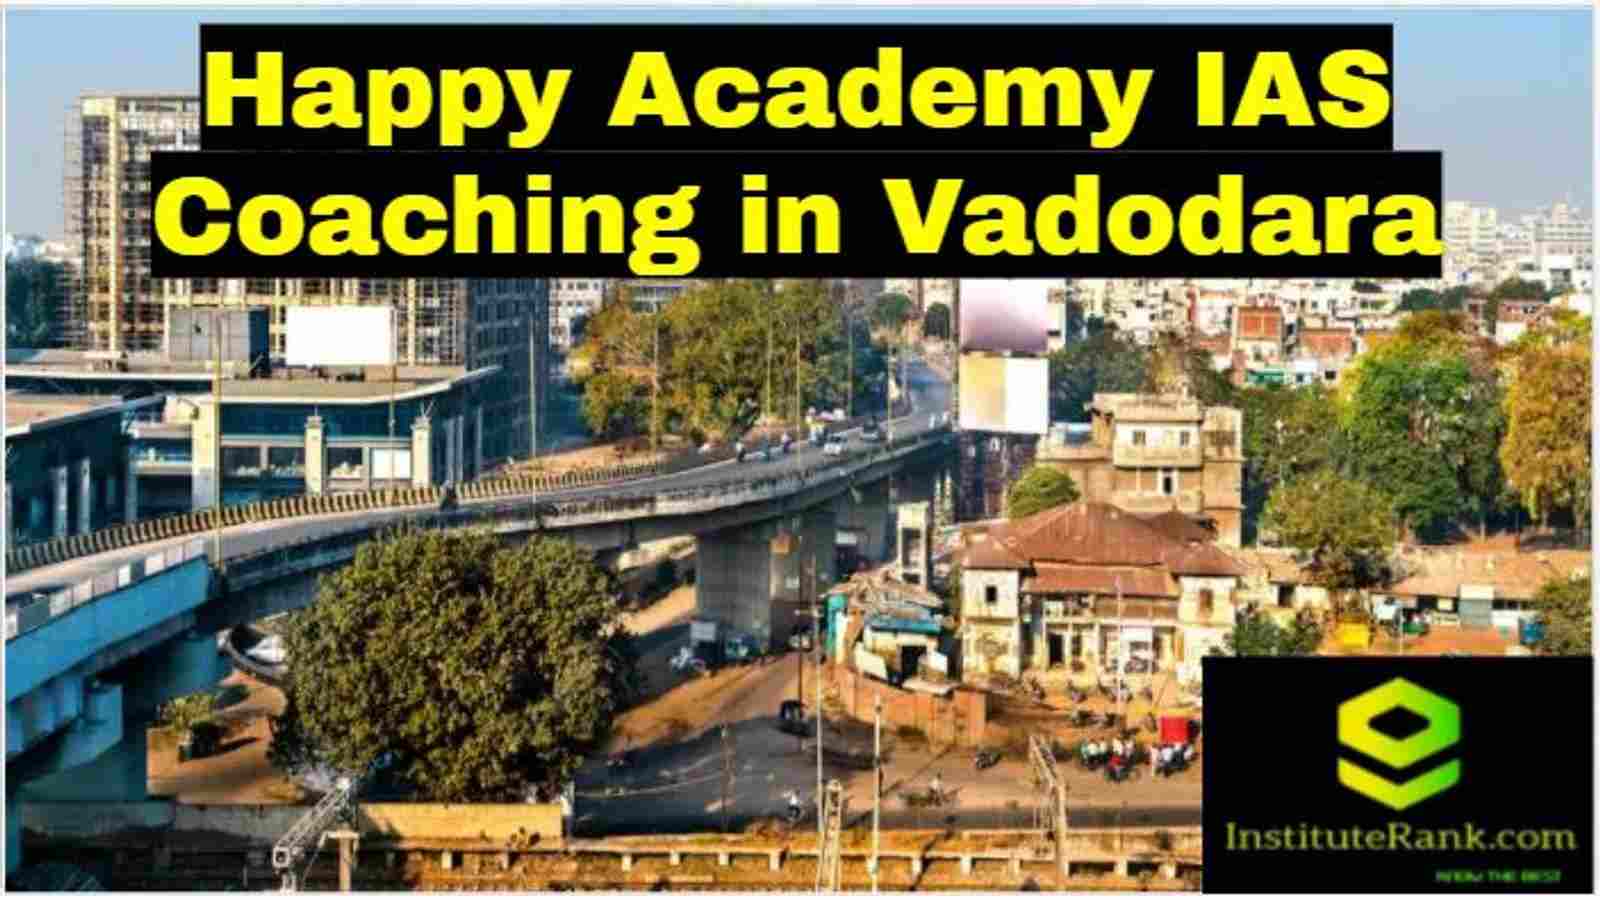 Happy Academy IAS Coaching in Vadodara